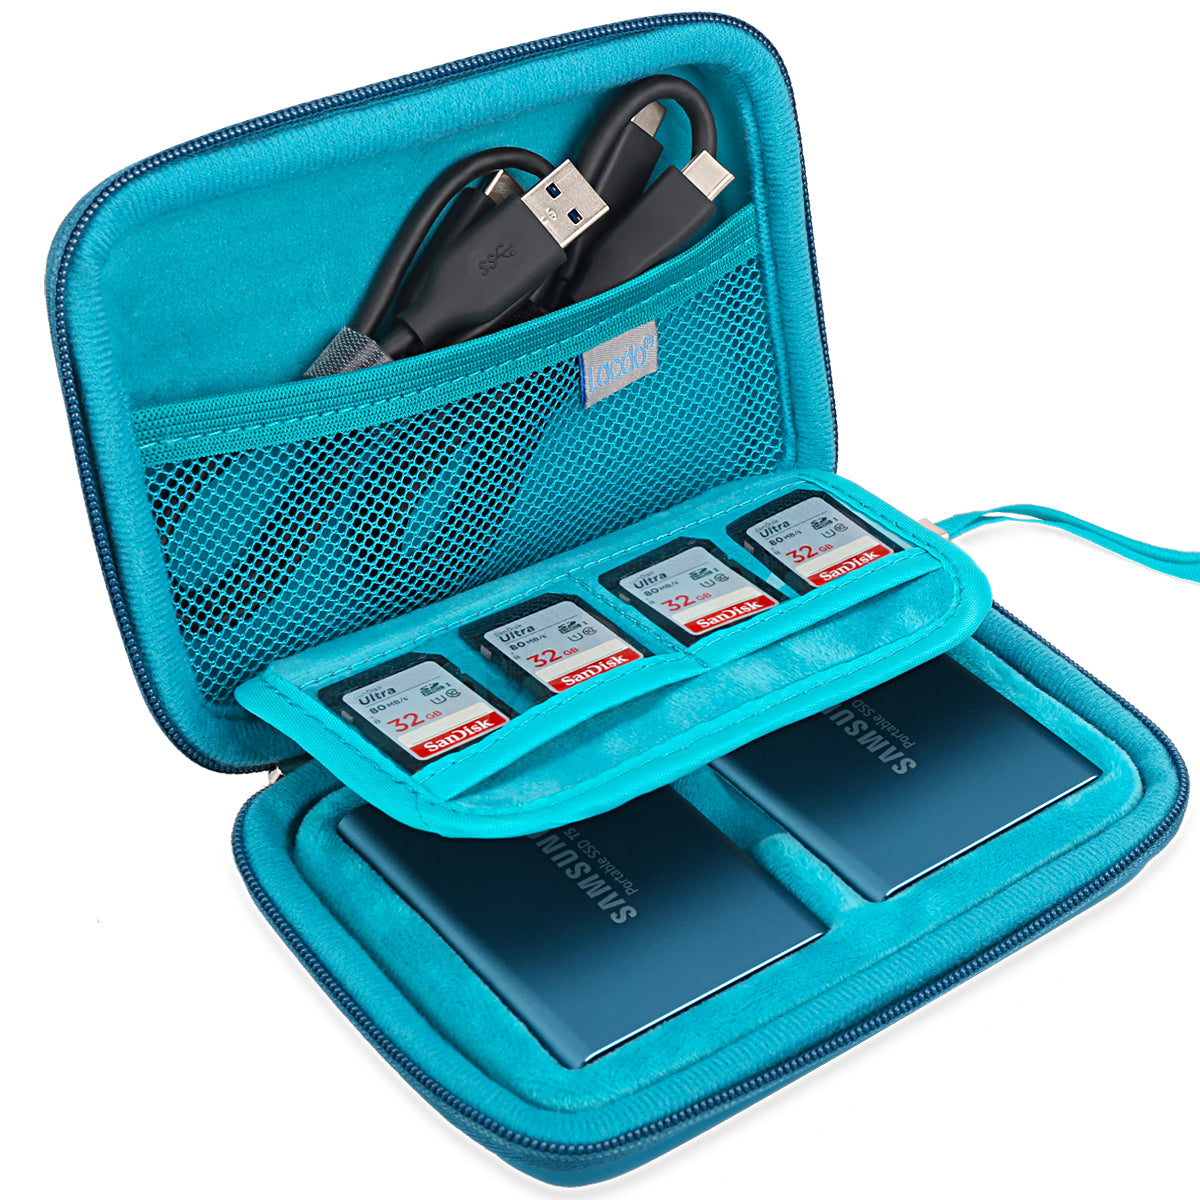 Coque Rigide pour Samsung T5 / T3 / T1 Portable 250 Go, 500 Go, 1 to, 2 to,  SSD USB 3.0, Disques SSD externes, Sac de Rangement 